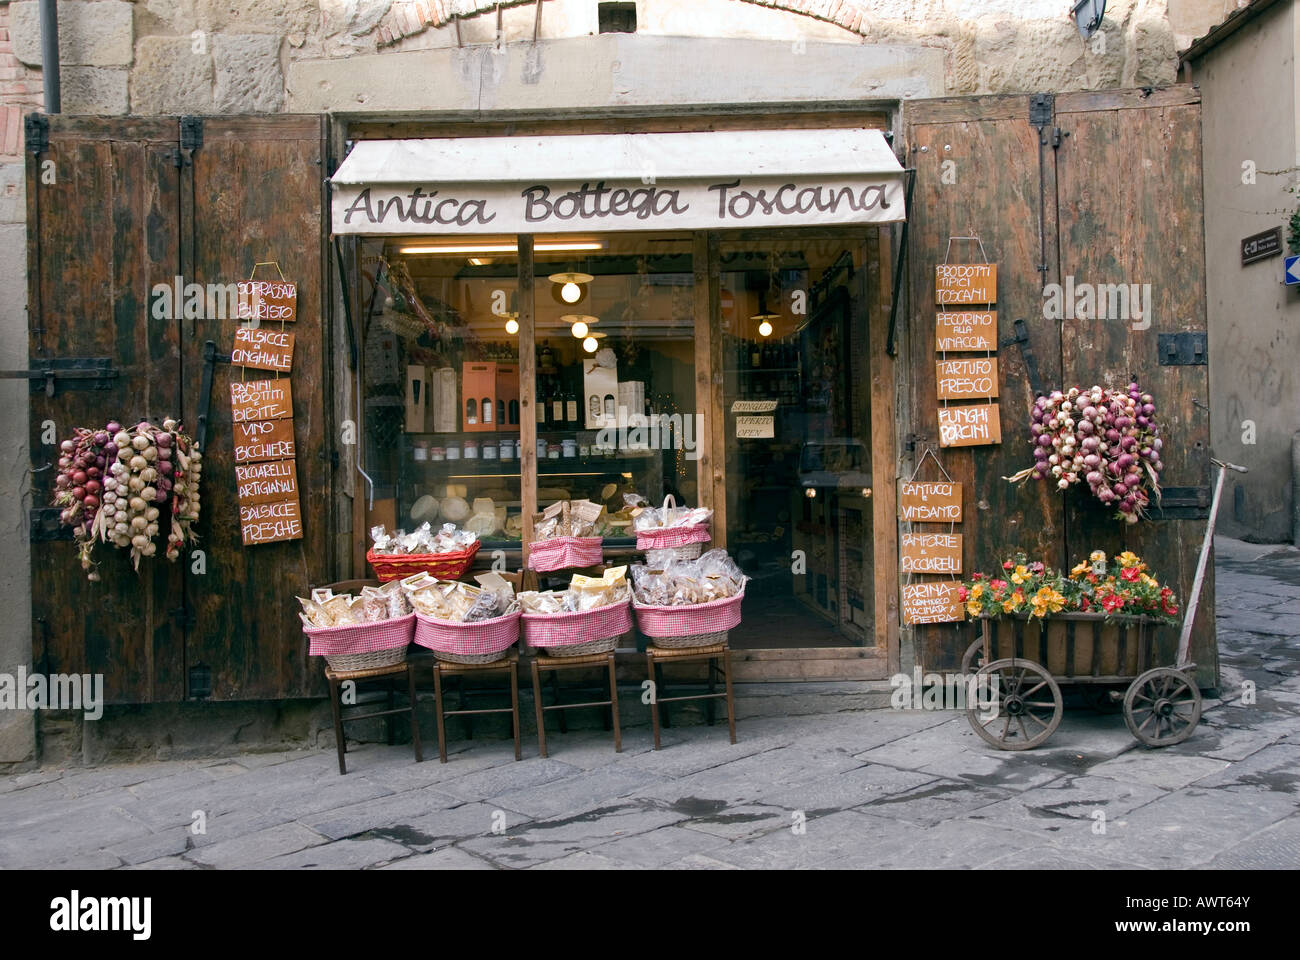 Local Tuscan produce store in Corso Italia Arezzo Tuscany Italy Stock Photo